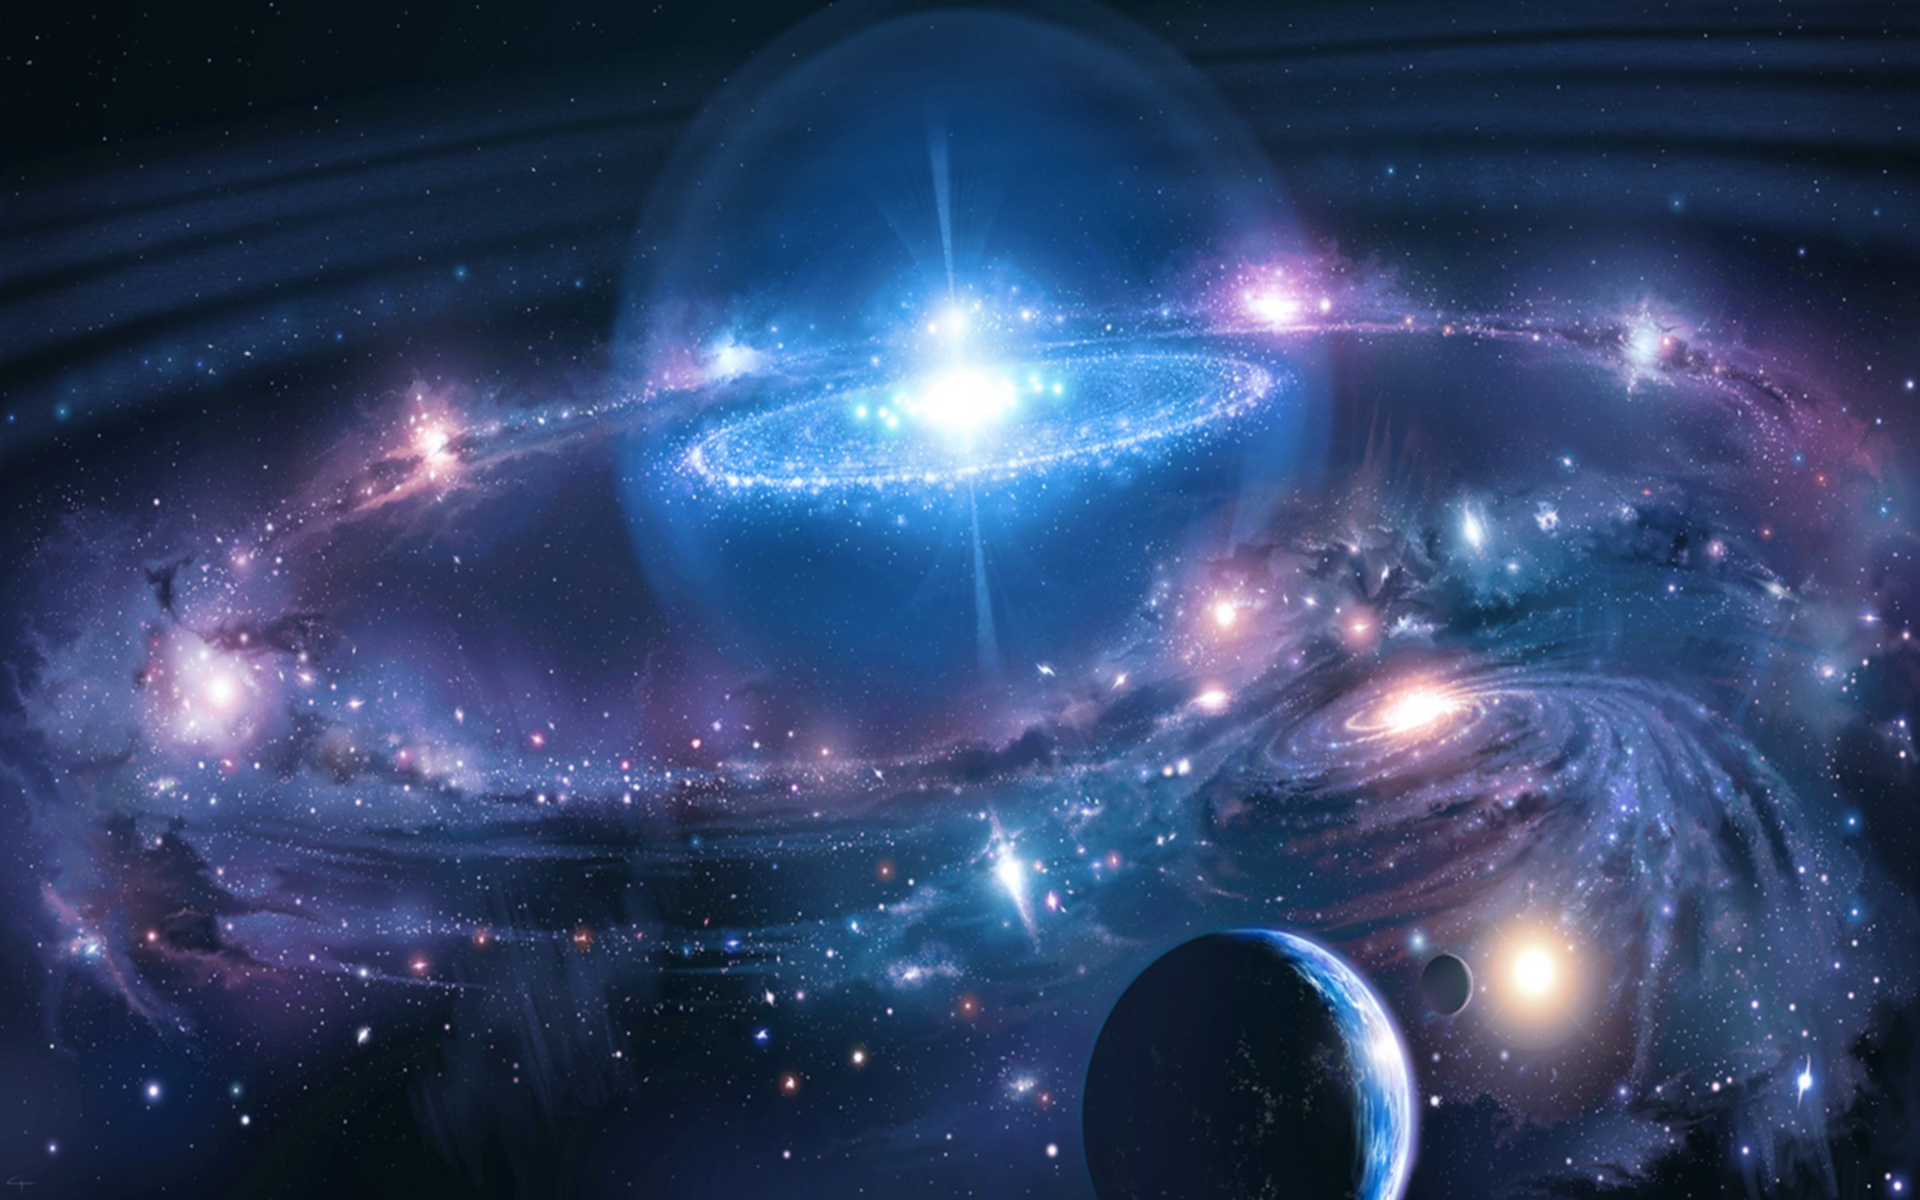 космическое пространство, звезды, галактики, планеты, Гэри Tonge - обои на рабочий стол